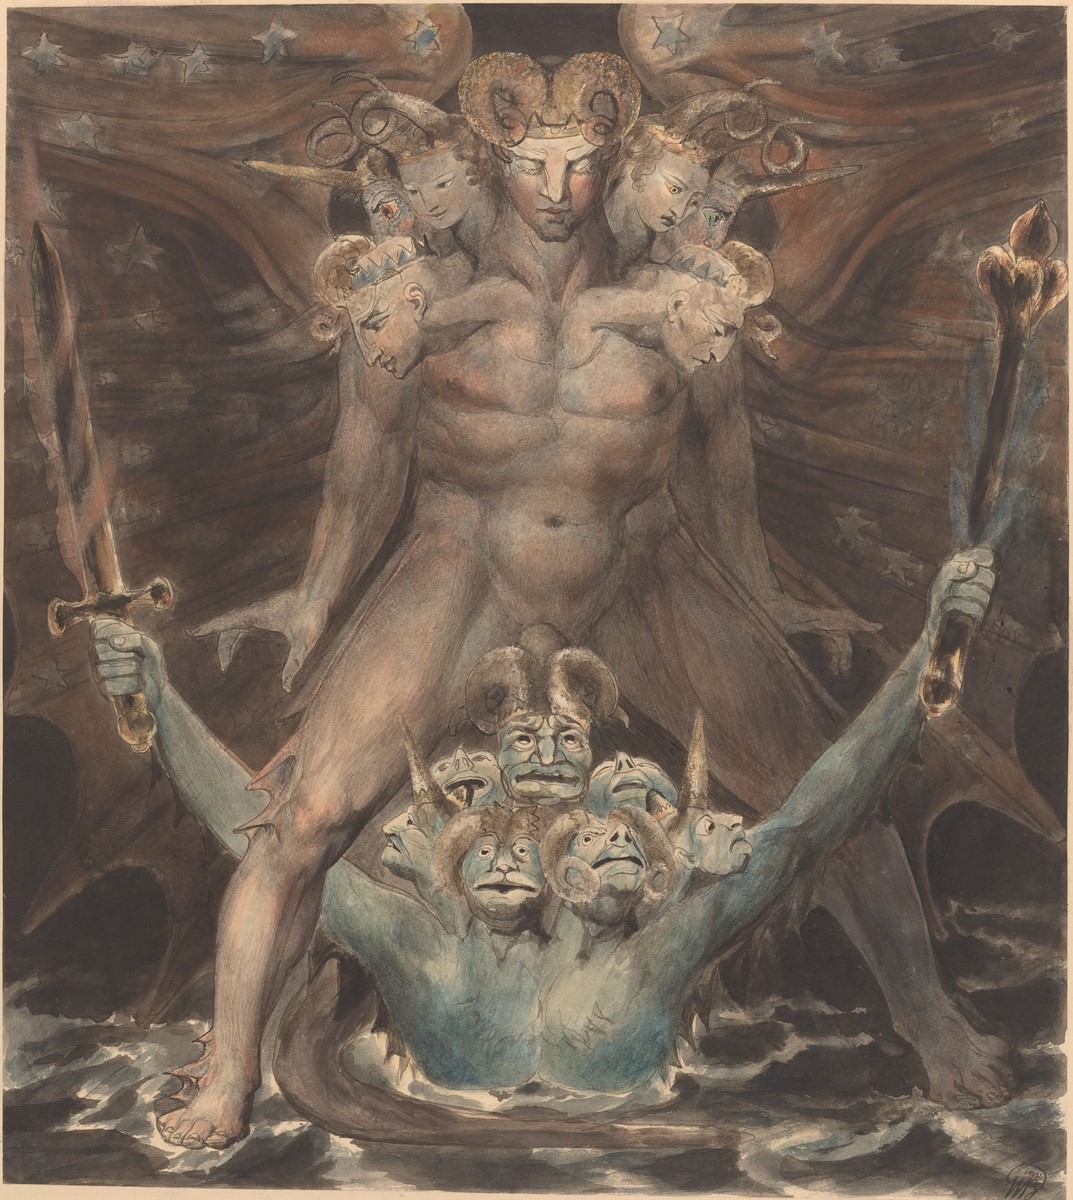 Der große rote Drache und das Tier aus dem Meer, 1805. William Blake. National Gallery of Art, Washington. Rosenwald Sammlung.